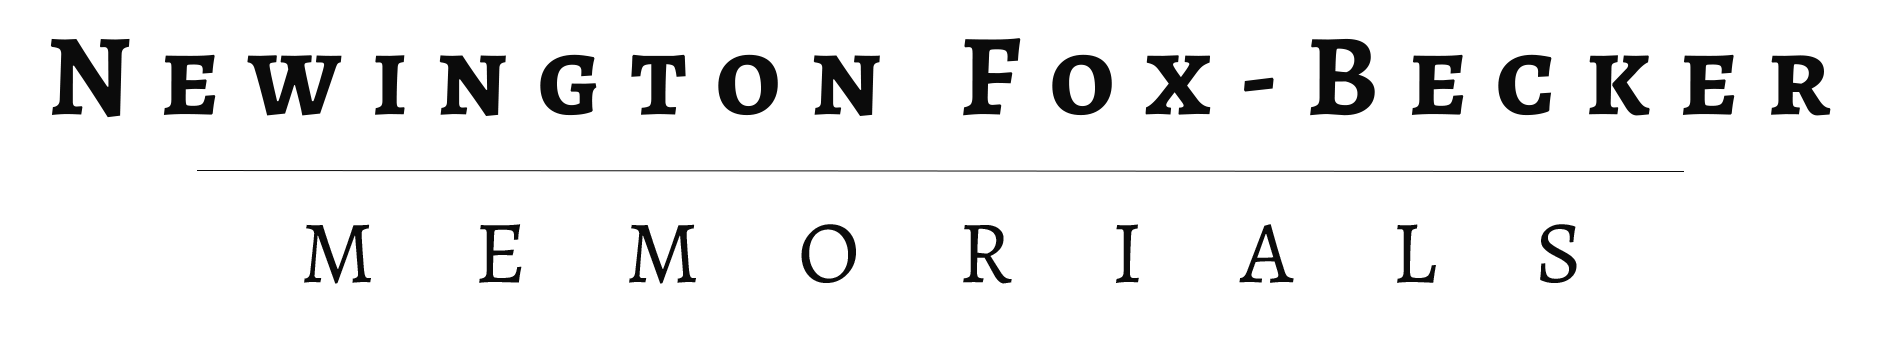 Newington Fox-Becker Memorials  logo